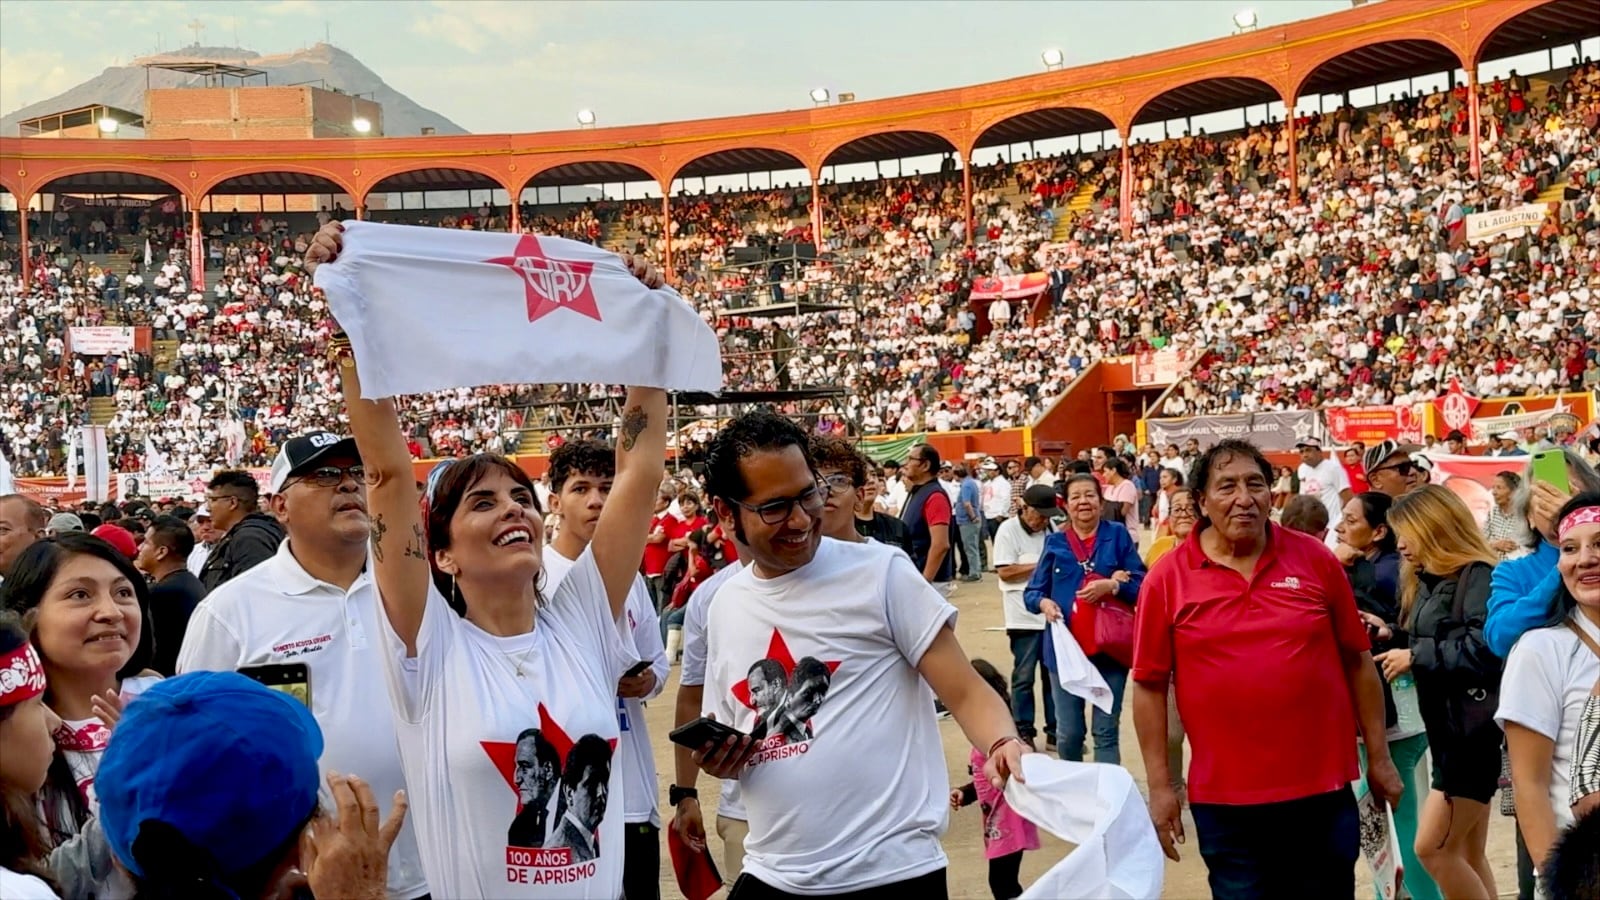 Carla García, rodeada de sus ‘compañeros’ Renzo Ibañez y Jaicec Espinoza, llegaron a la Plaza de Acho el domingo pasado, apenas aterrizados de una gira que hicieron en Lambayeque. (Foto: Javier Ponce)